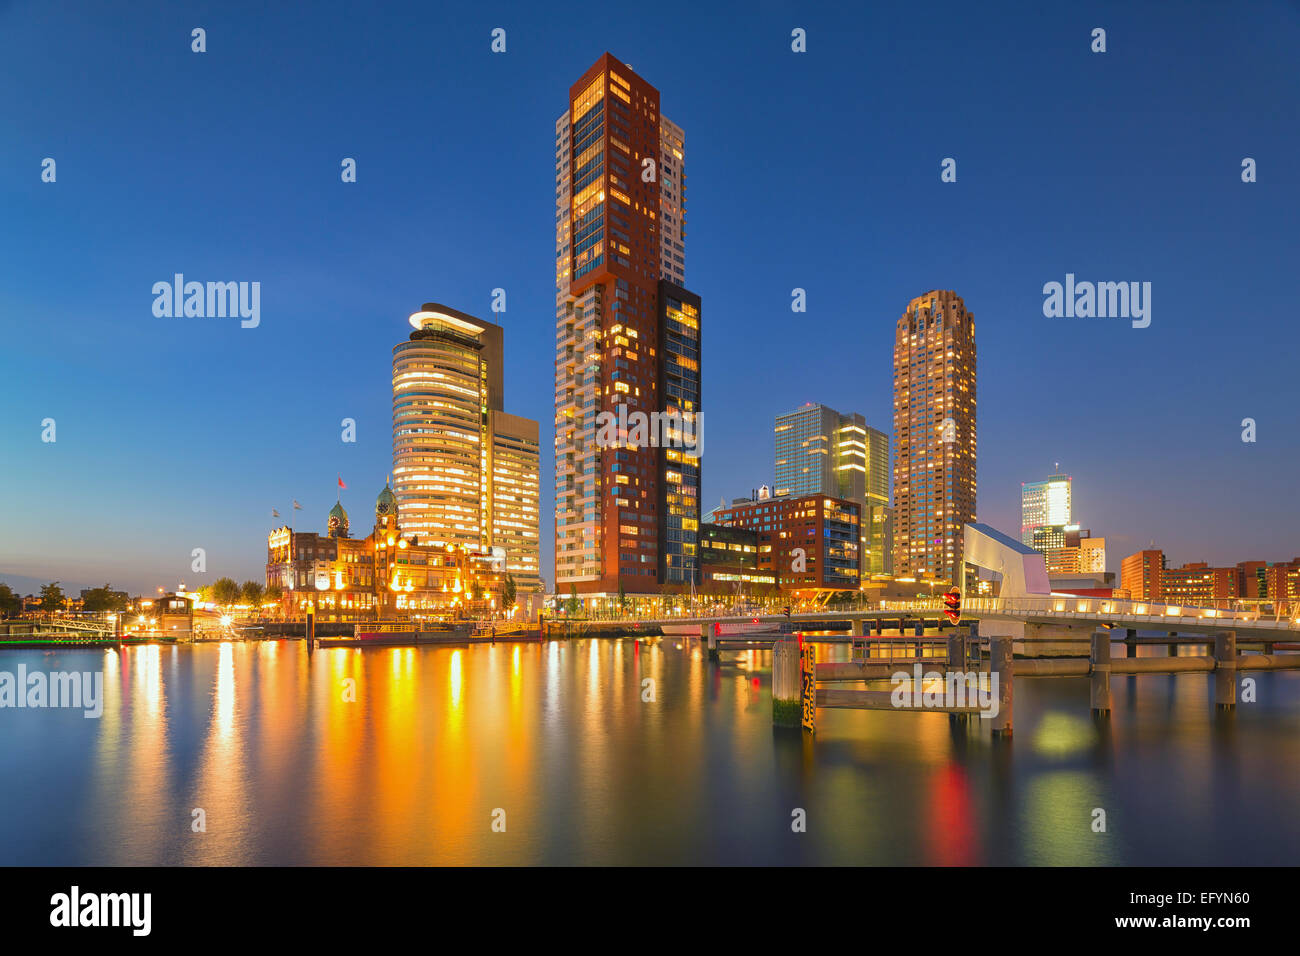 Un citycape spectaculaire des gratte-ciel à Rotterdam, Pays-Bas Banque D'Images